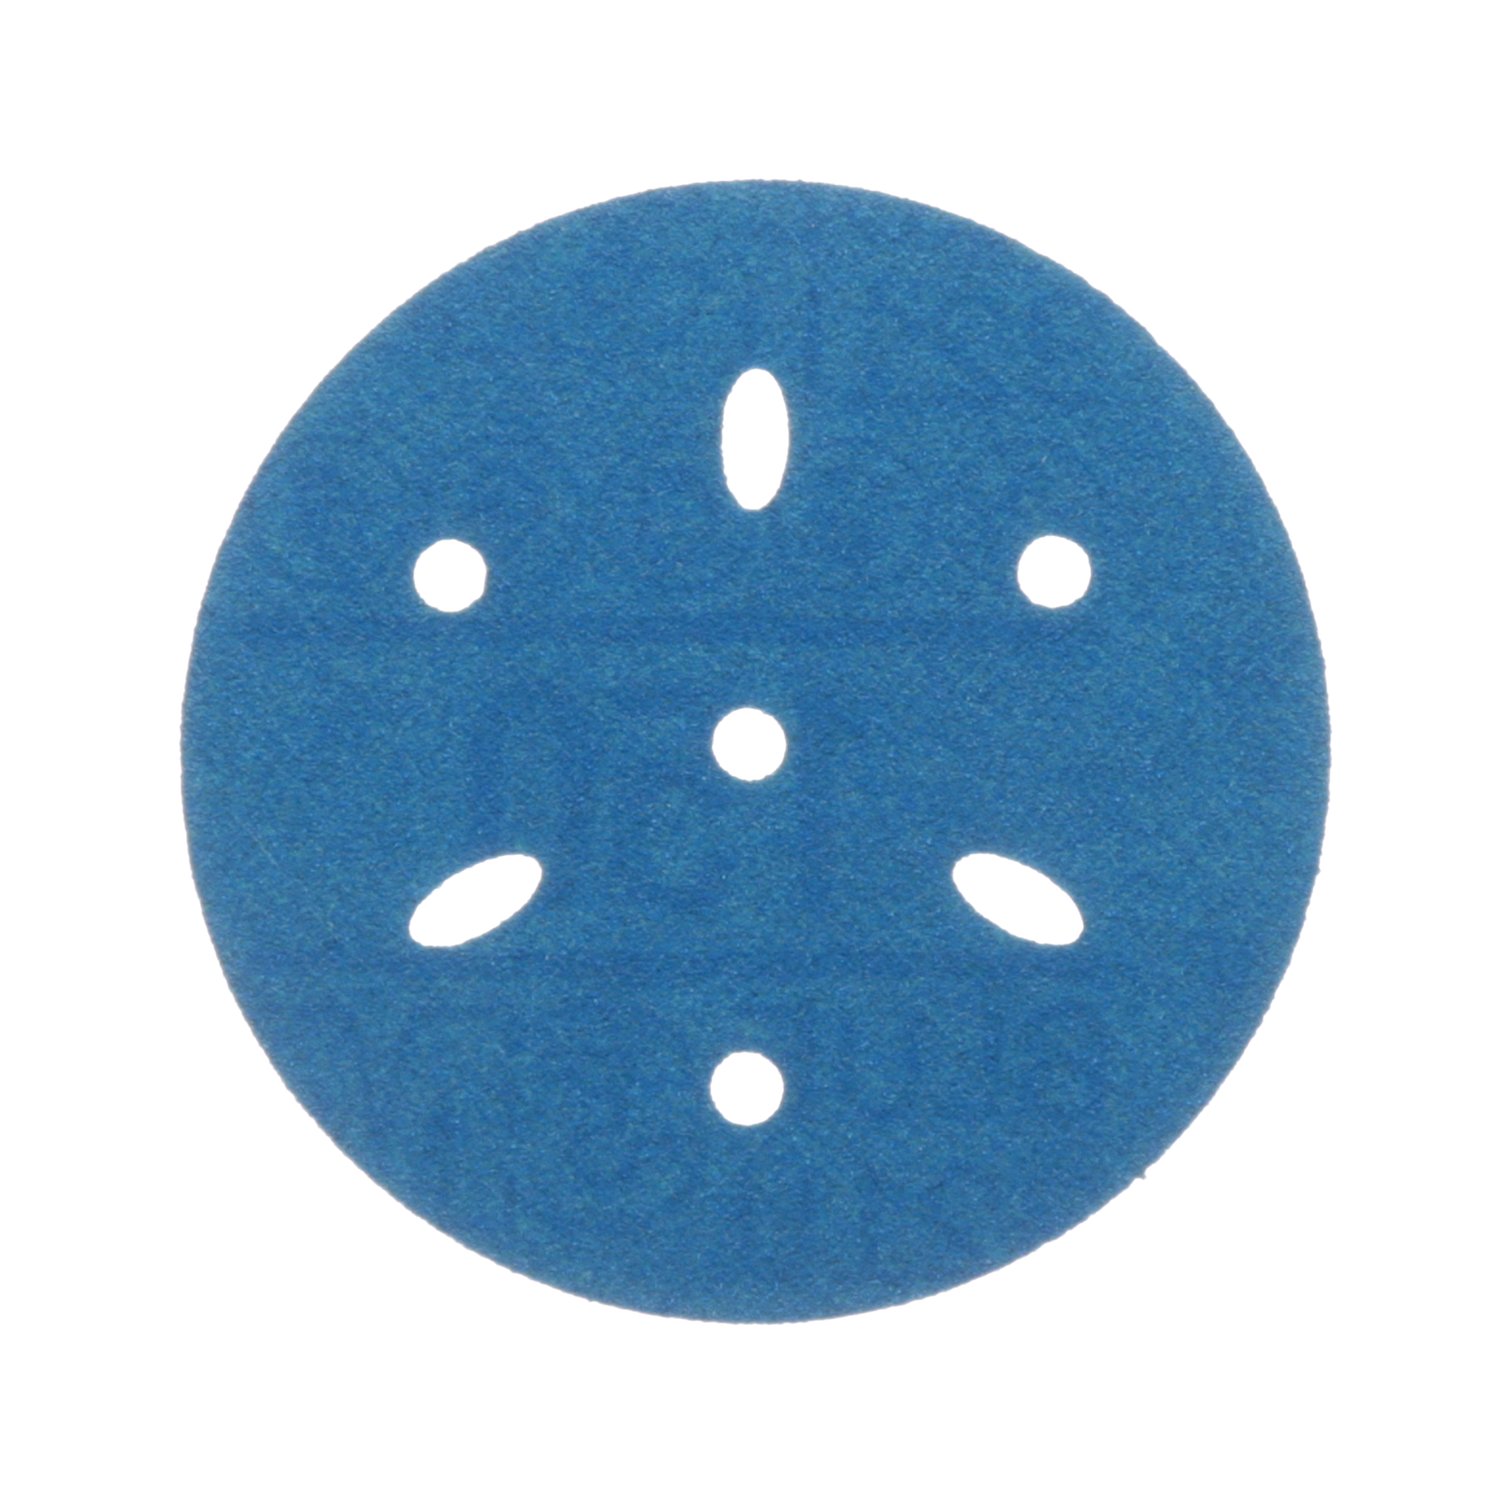 7100091343 - 3M Hookit Blue Abrasive Disc Multi-hole, 36145, 3 in, 150 grade, 50
discs per carton, 4 cartons per case